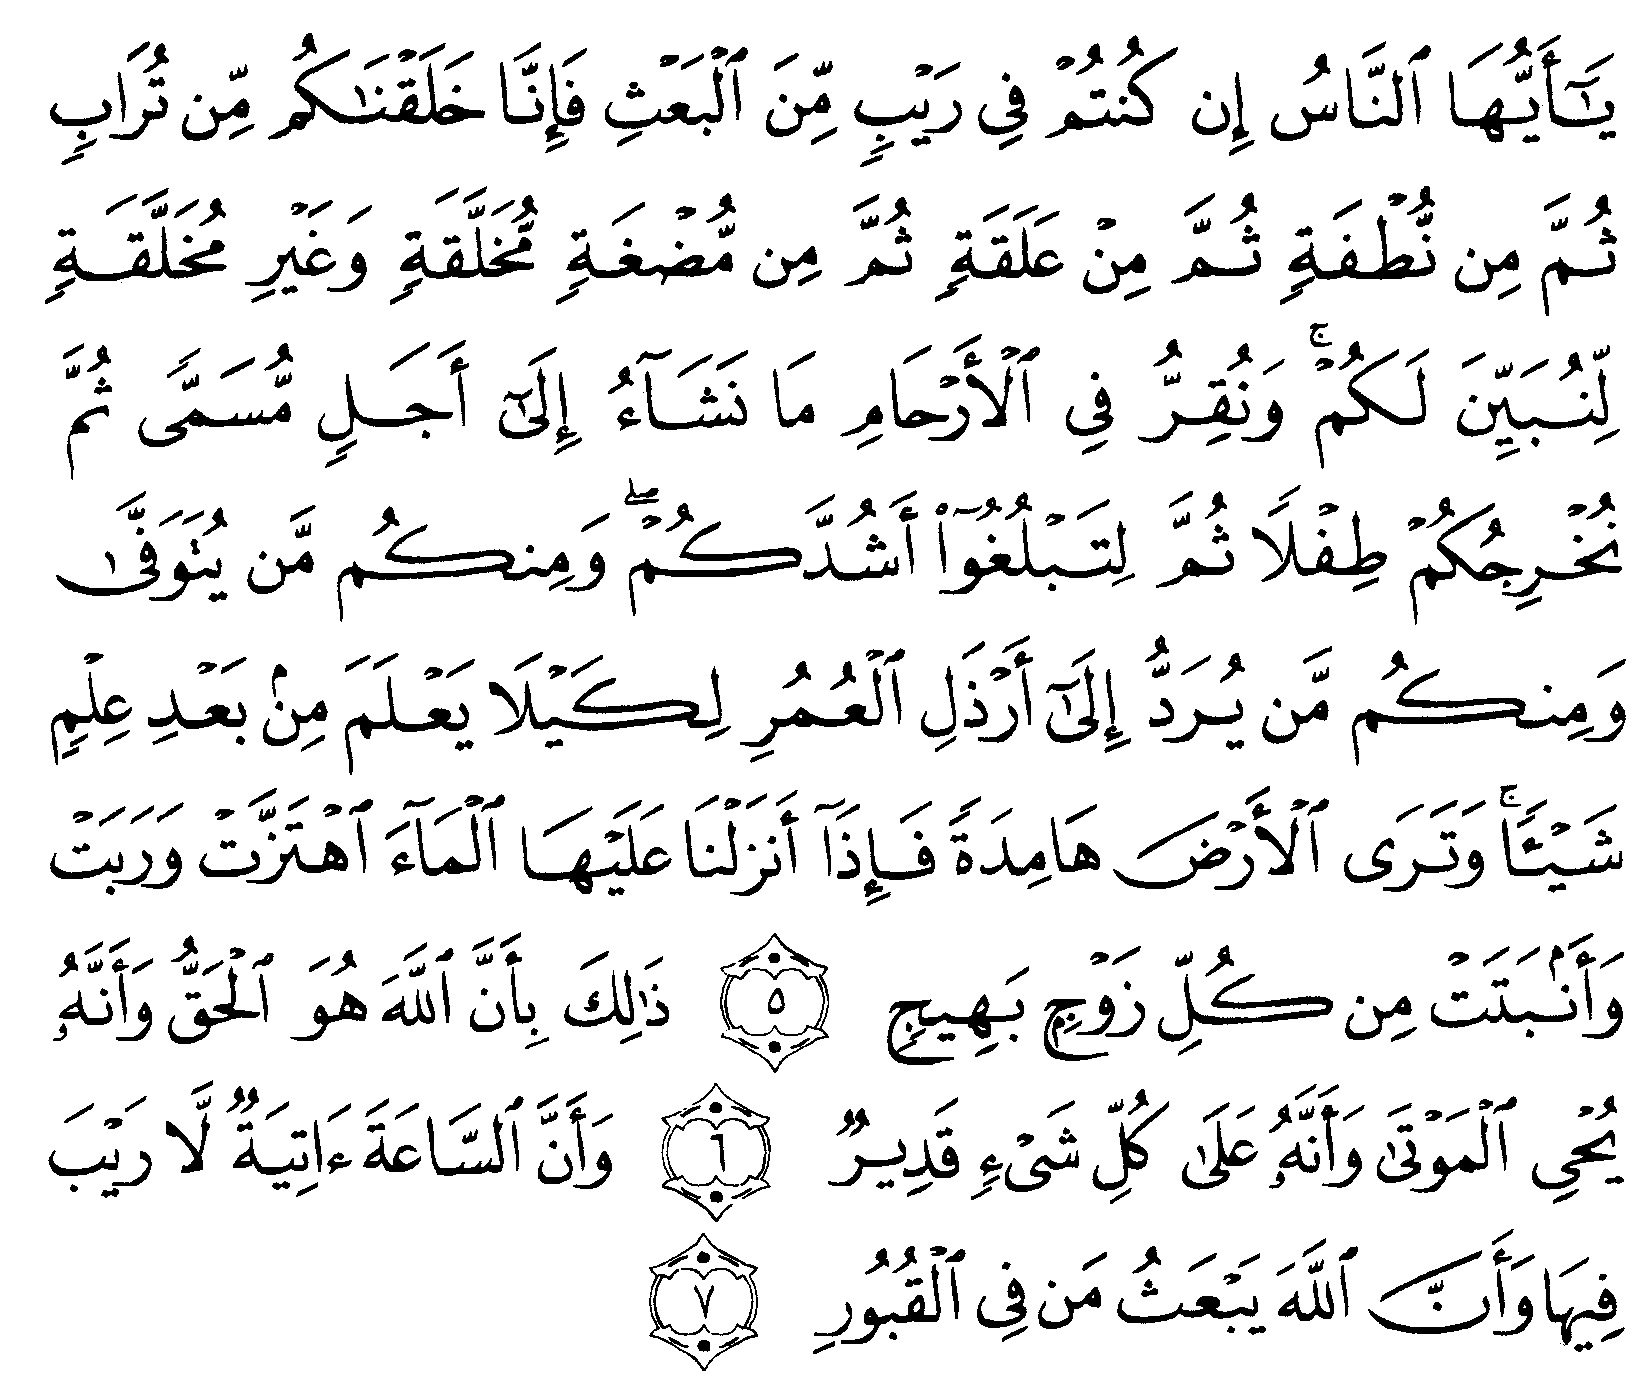 tulisan arab alquran surat al hajj ayat 5 7 “